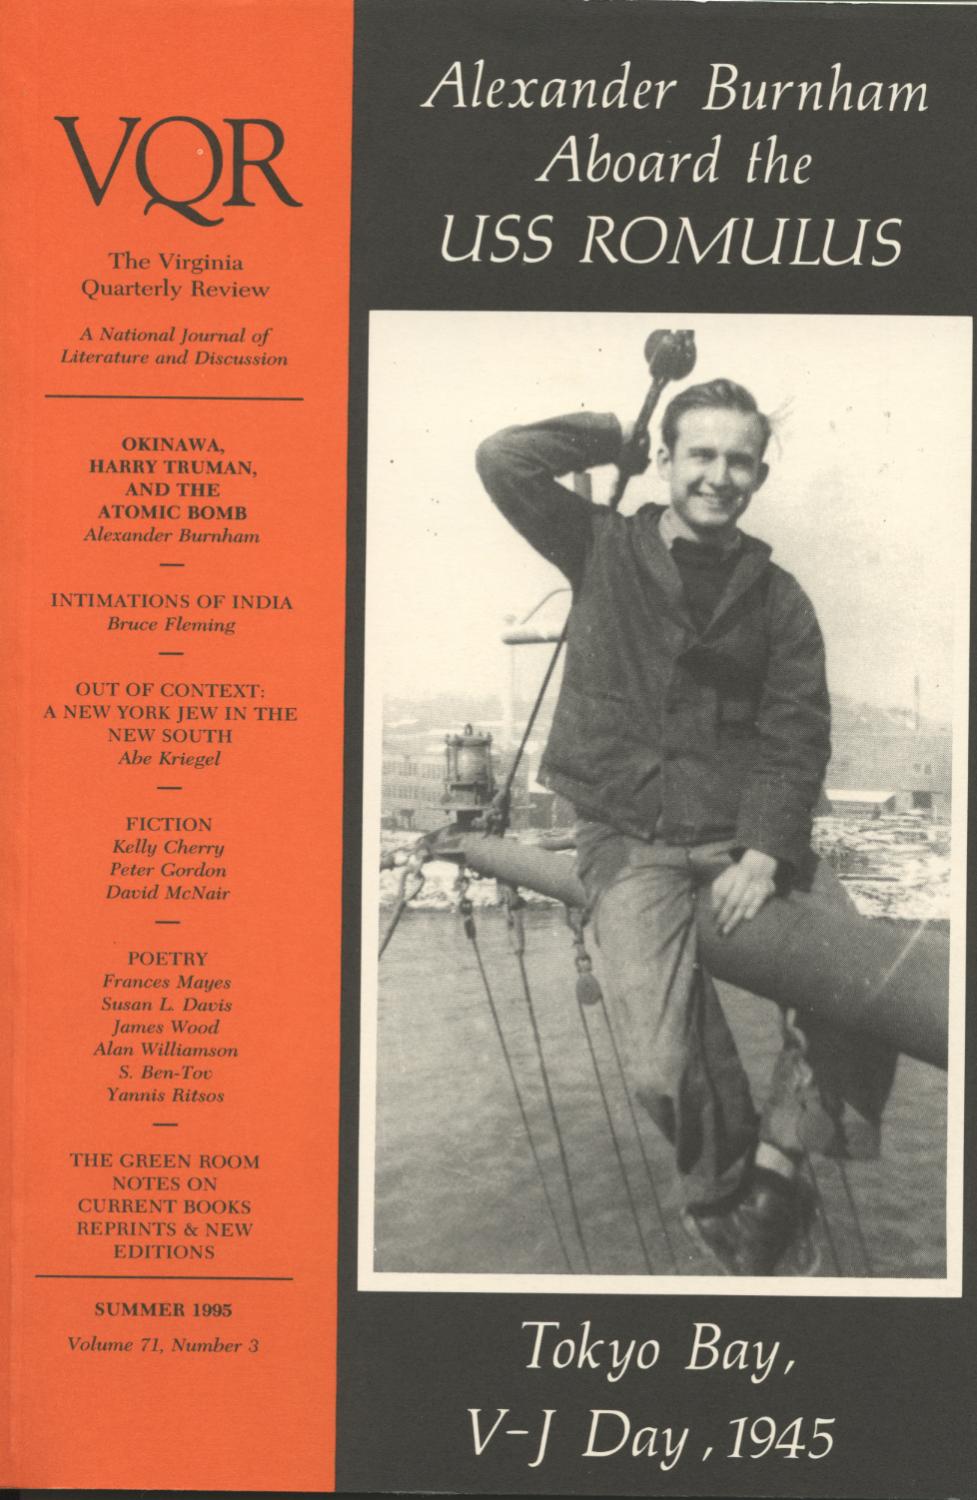 Virginia Quarterly Review, Summer 1995 cover